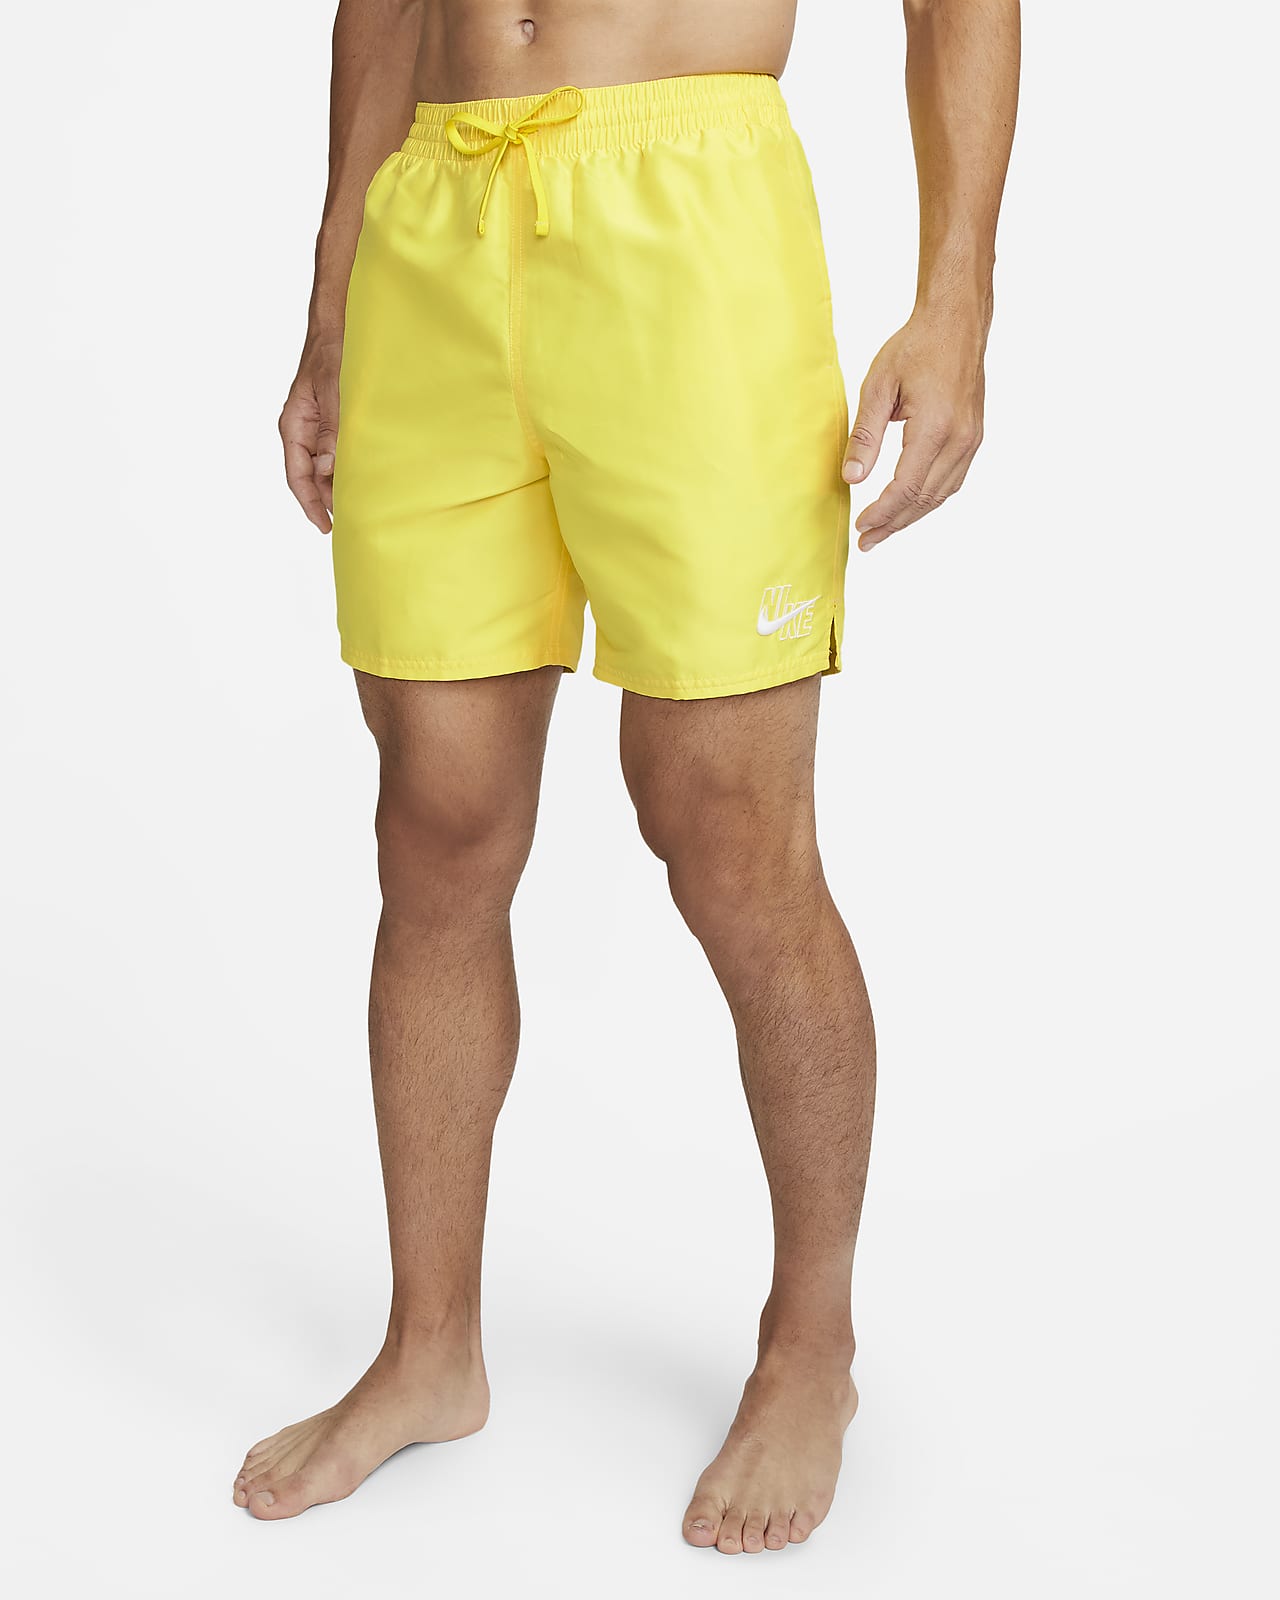 Traje de baño tipo short de voleibol de 18 cm para hombre Nike Essential